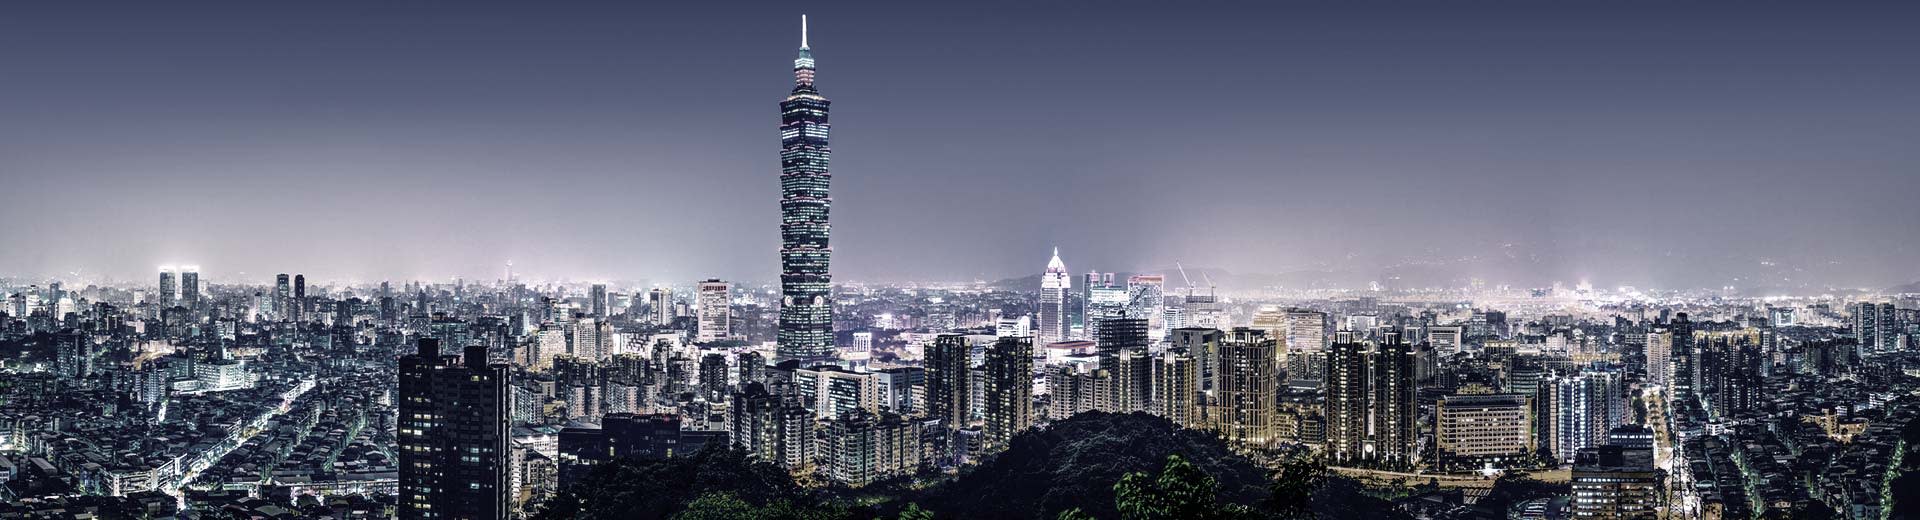 Le paysage urbain étincelant de Taipei, avec d'innombrables gratte-ciel et des complexes d'appartements de grande hauteur à ce sujet.